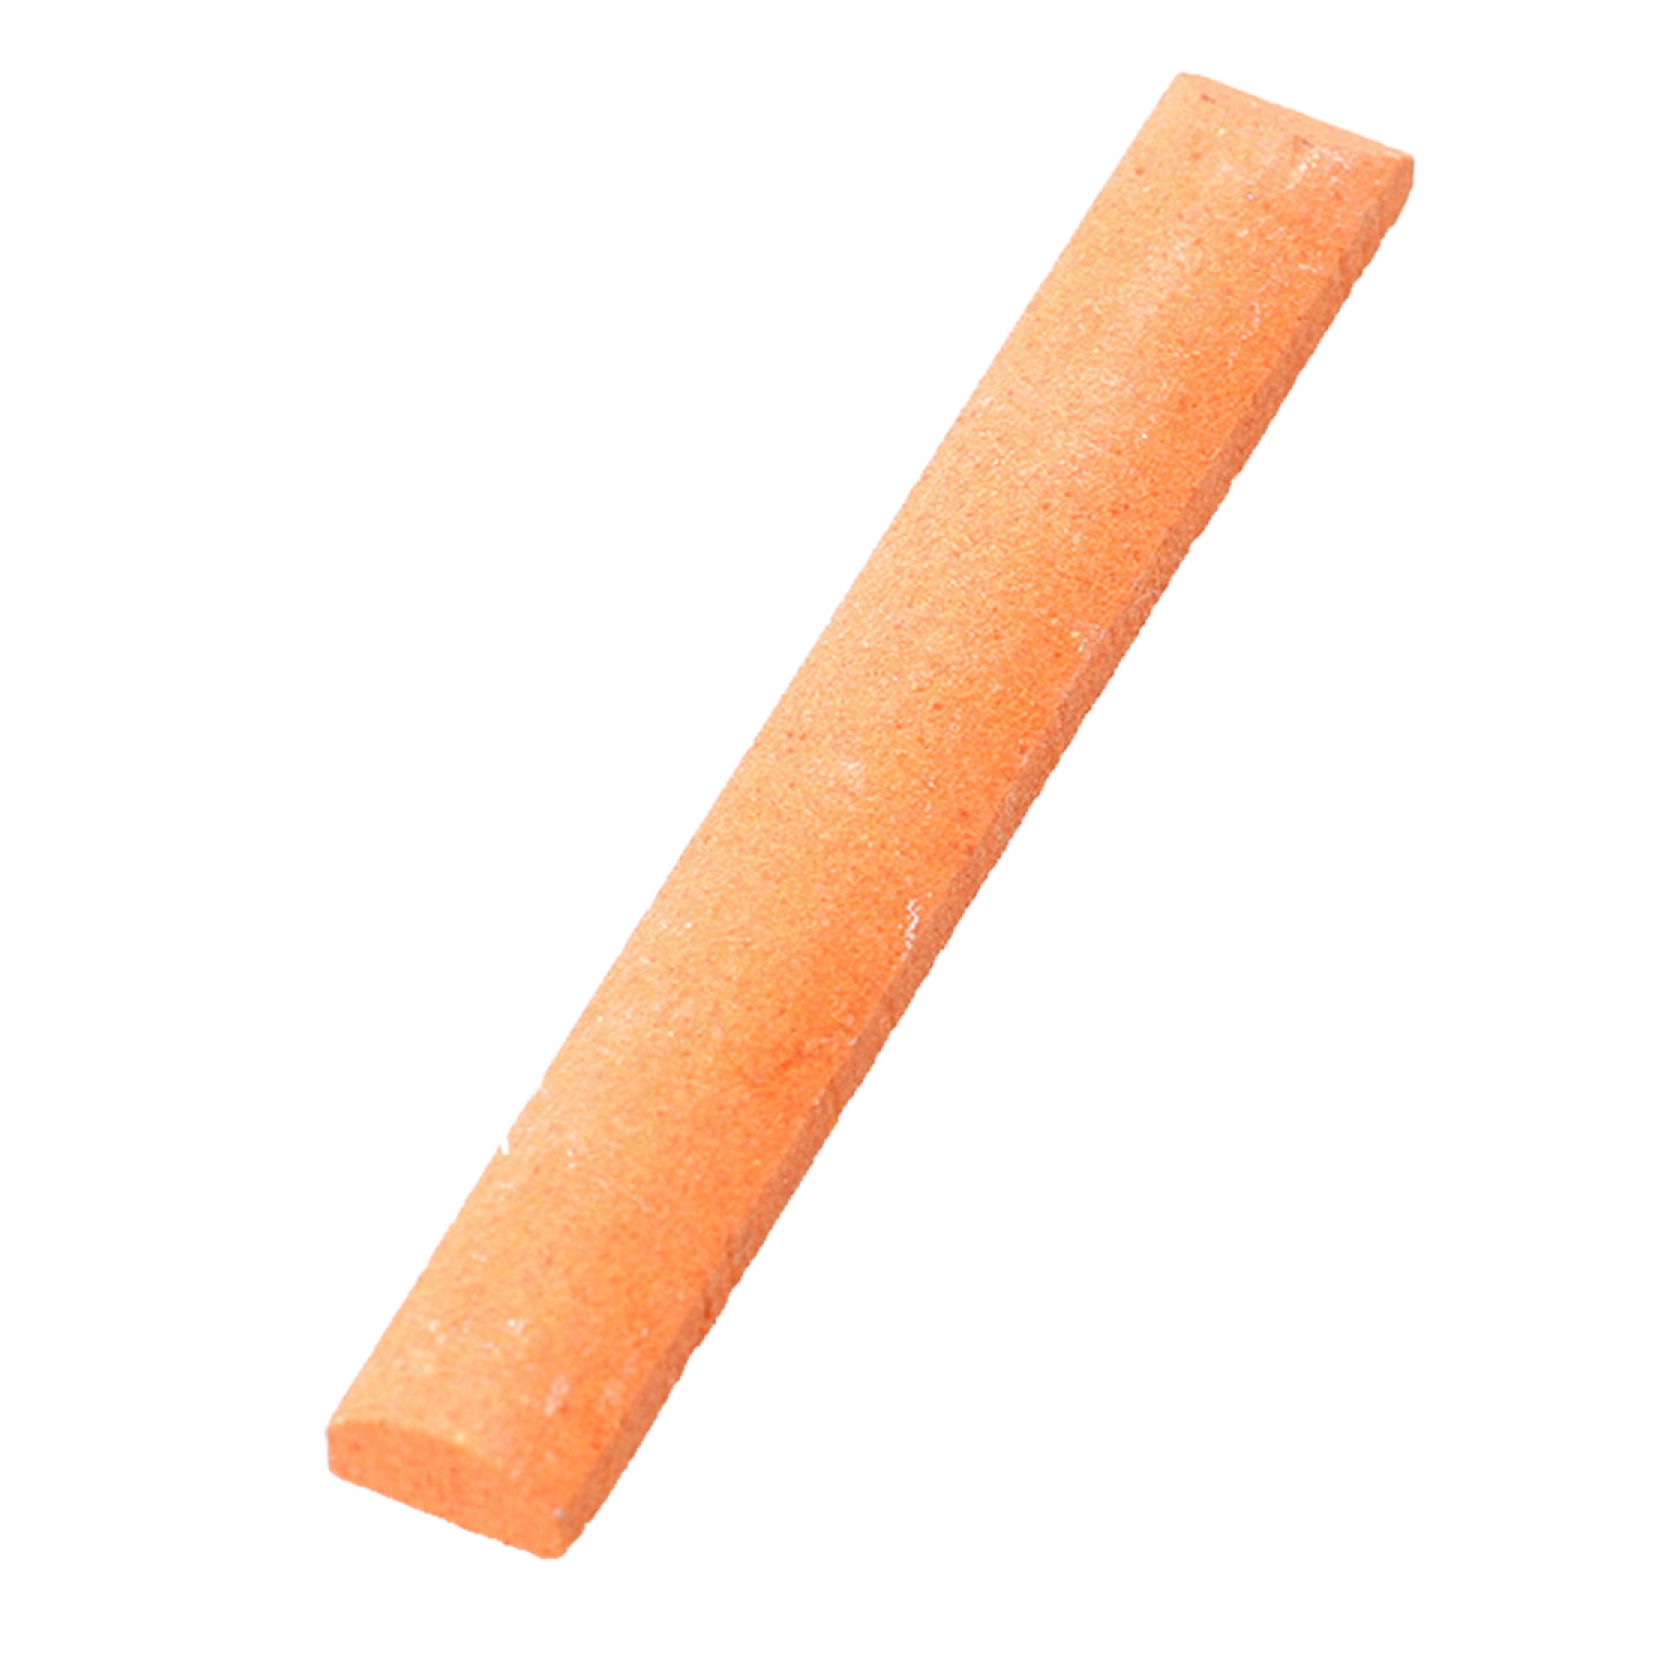  для ножей Victorinox, оранжевая, d_4.0567.32 по цене 700.0 руб .